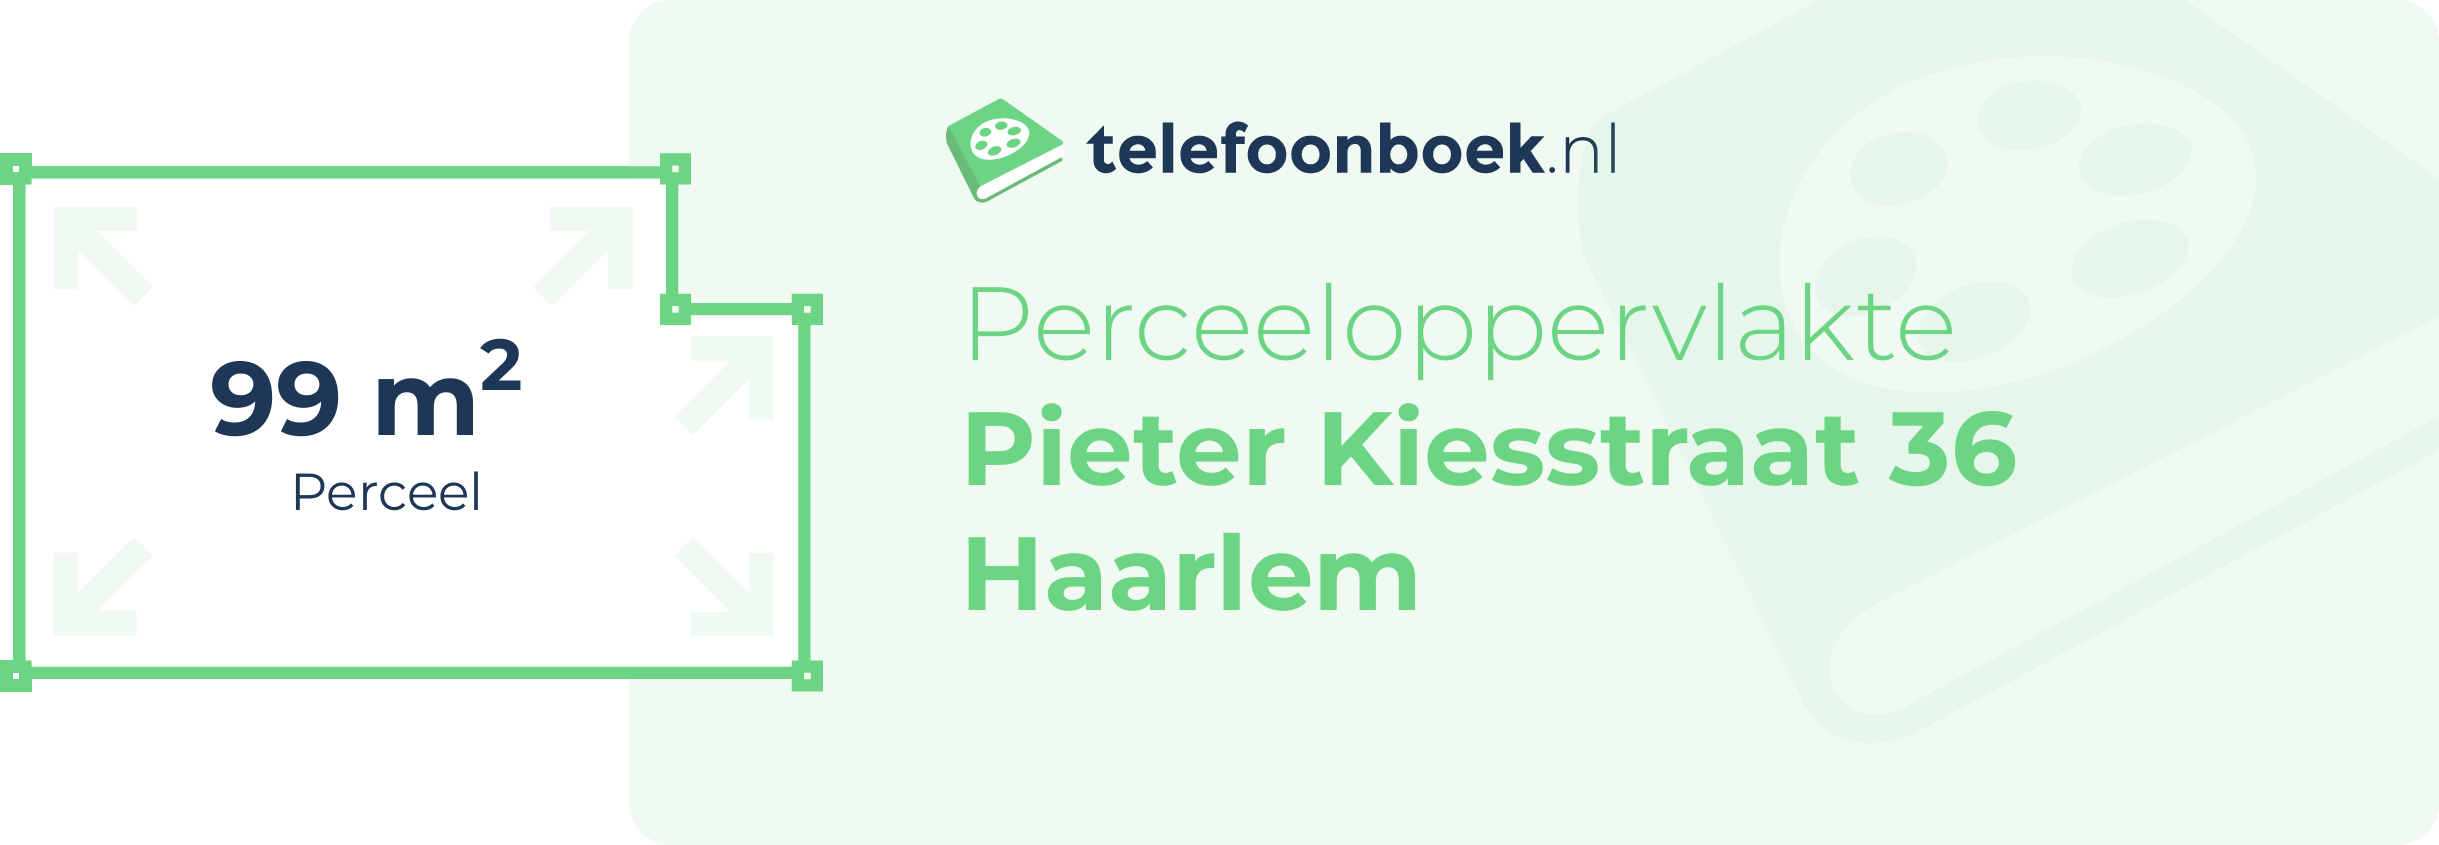 Perceeloppervlakte Pieter Kiesstraat 36 Haarlem